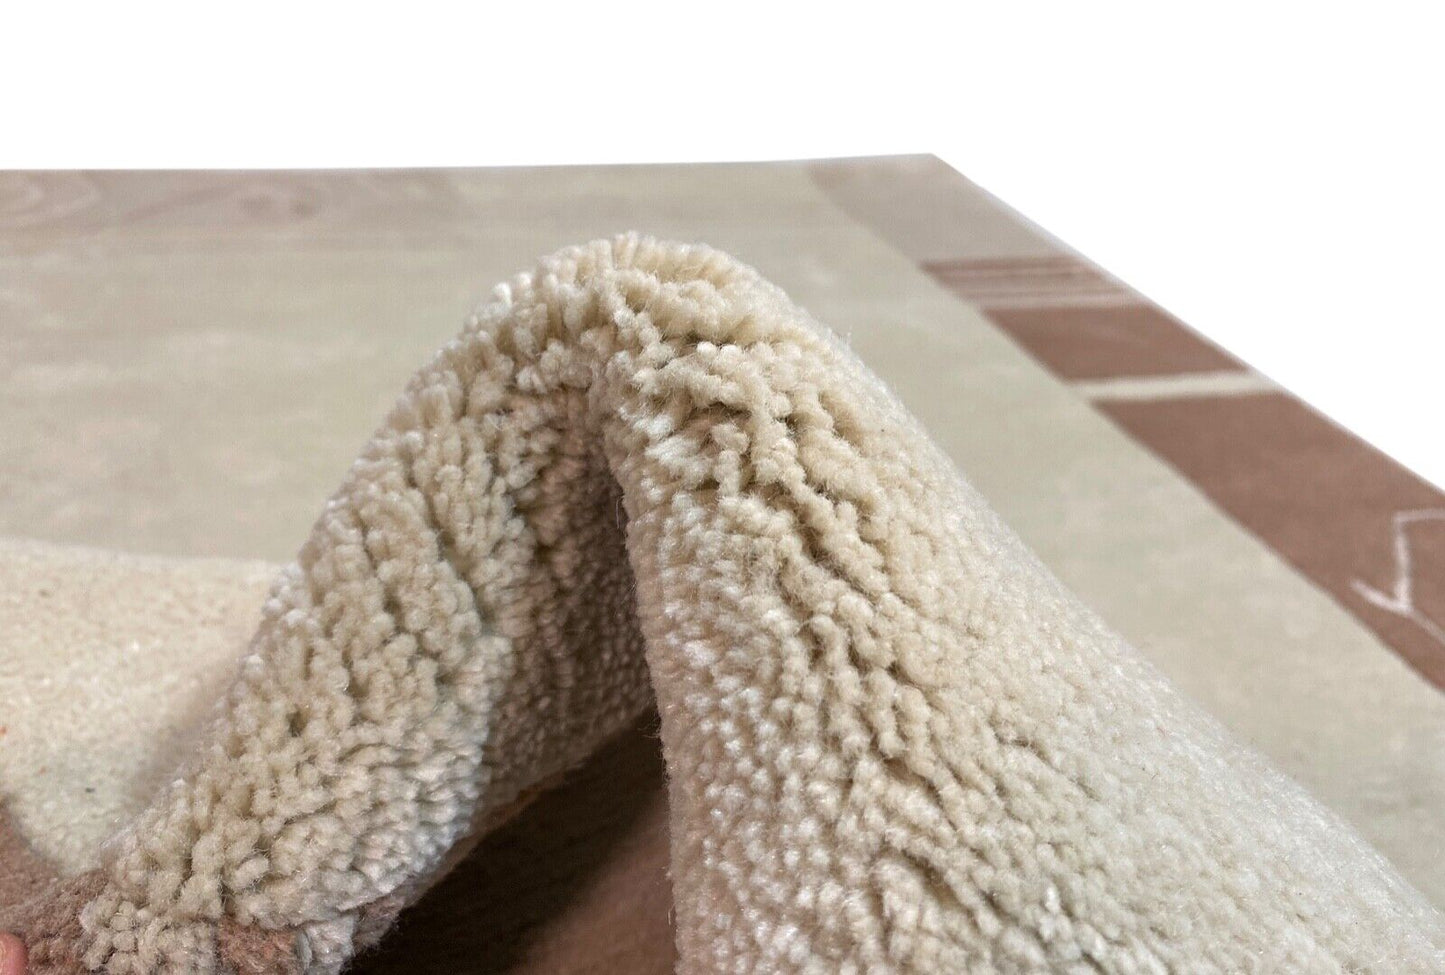 Indo Nepal Teppich Handgeknüpft Beige Braun 120X180 cm Wolle Orientteppich